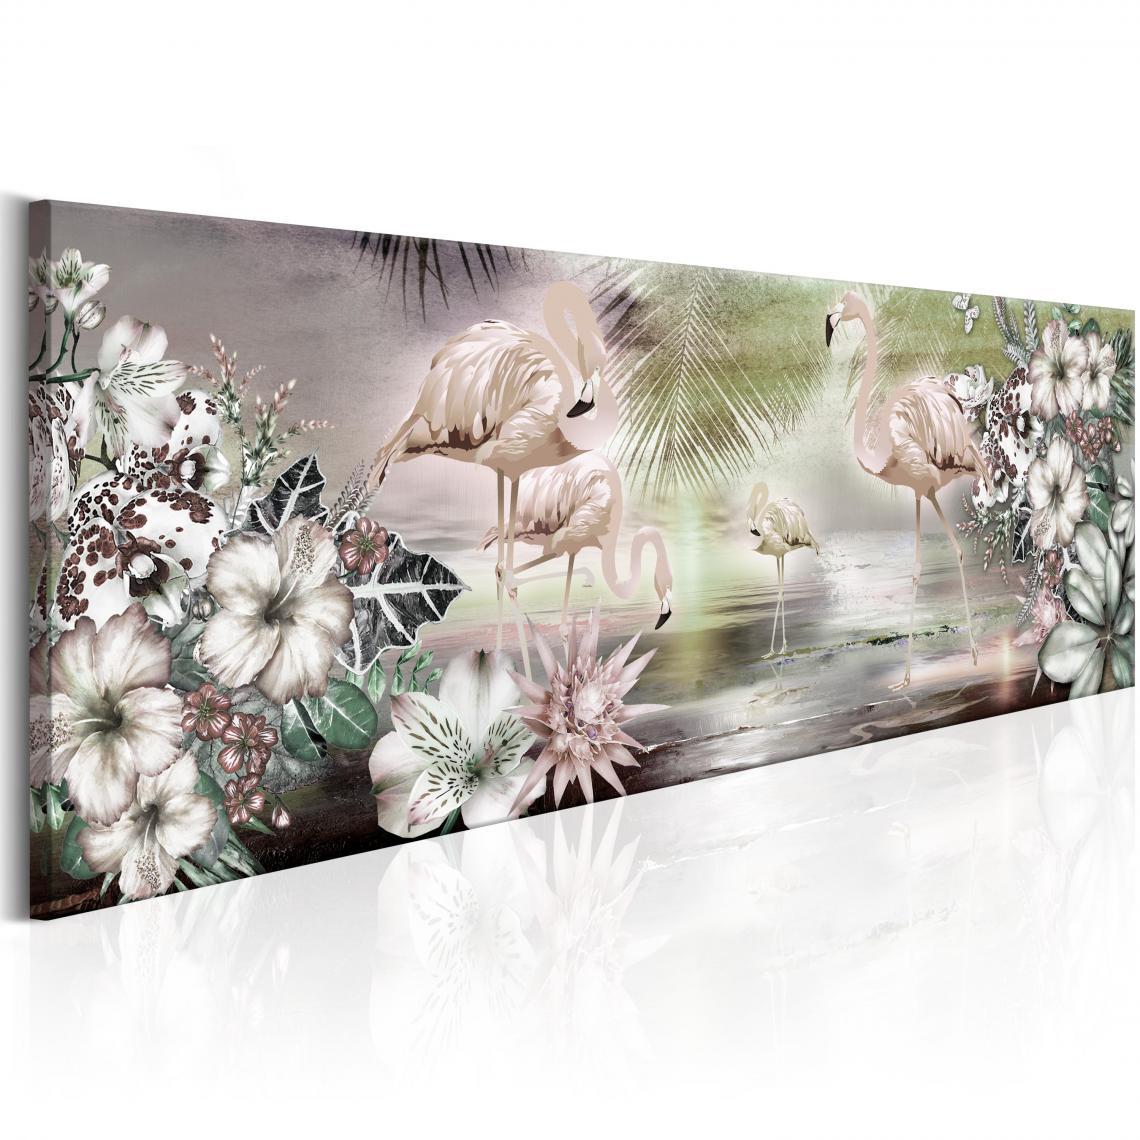 Decoshop26 - Tableau sur toile décoration murale image imprimée cadre en bois à suspendre Flamants roses et fleurs 120x40 cm 11_0003116 - Tableaux, peintures